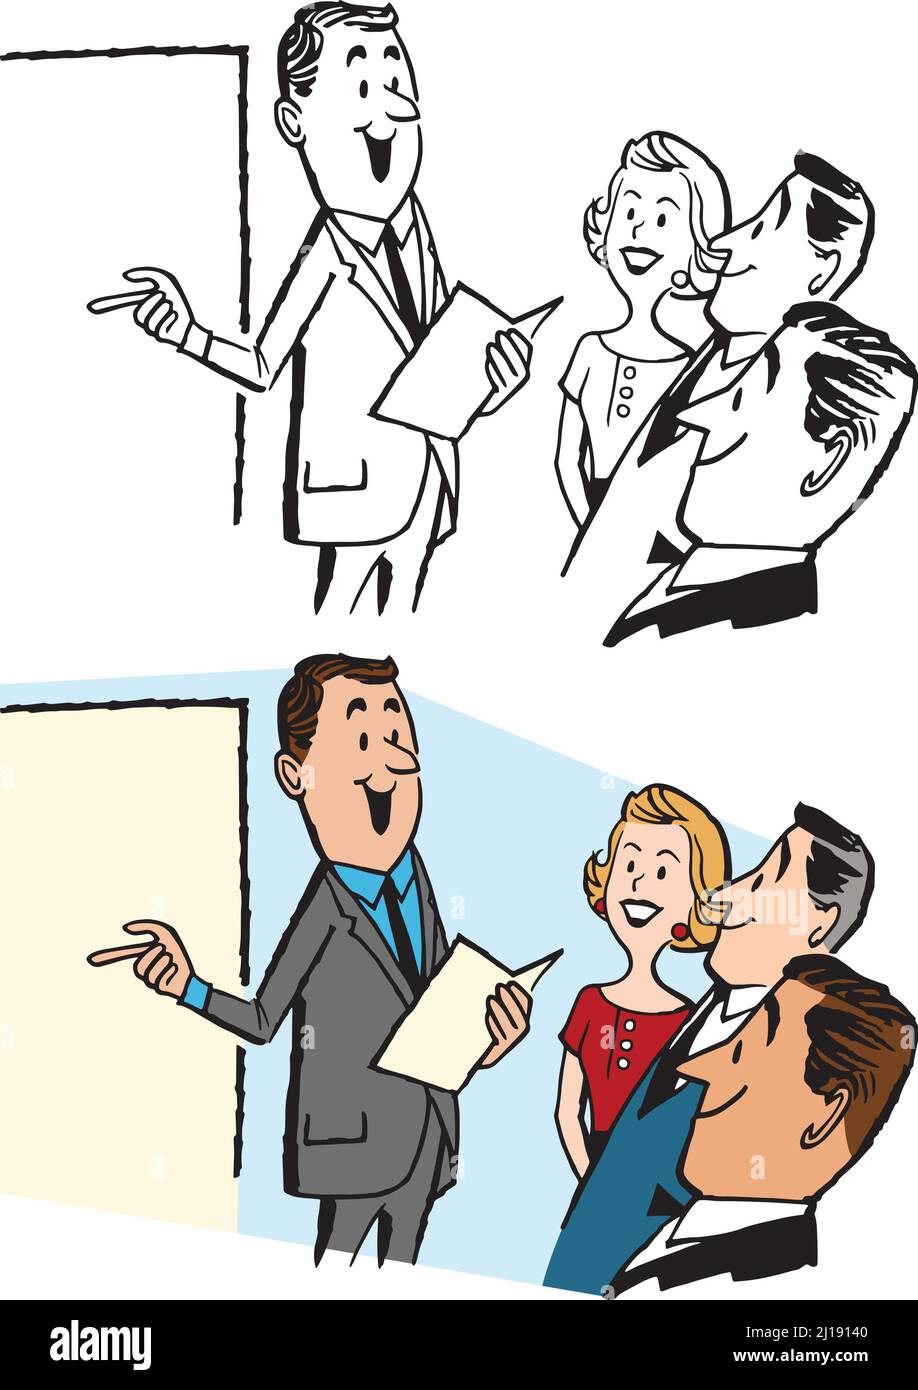 Un dessin animé rétro vintage d'un homme d'affaires donnant une présentation à ses collègues. Illustration de Vecteur